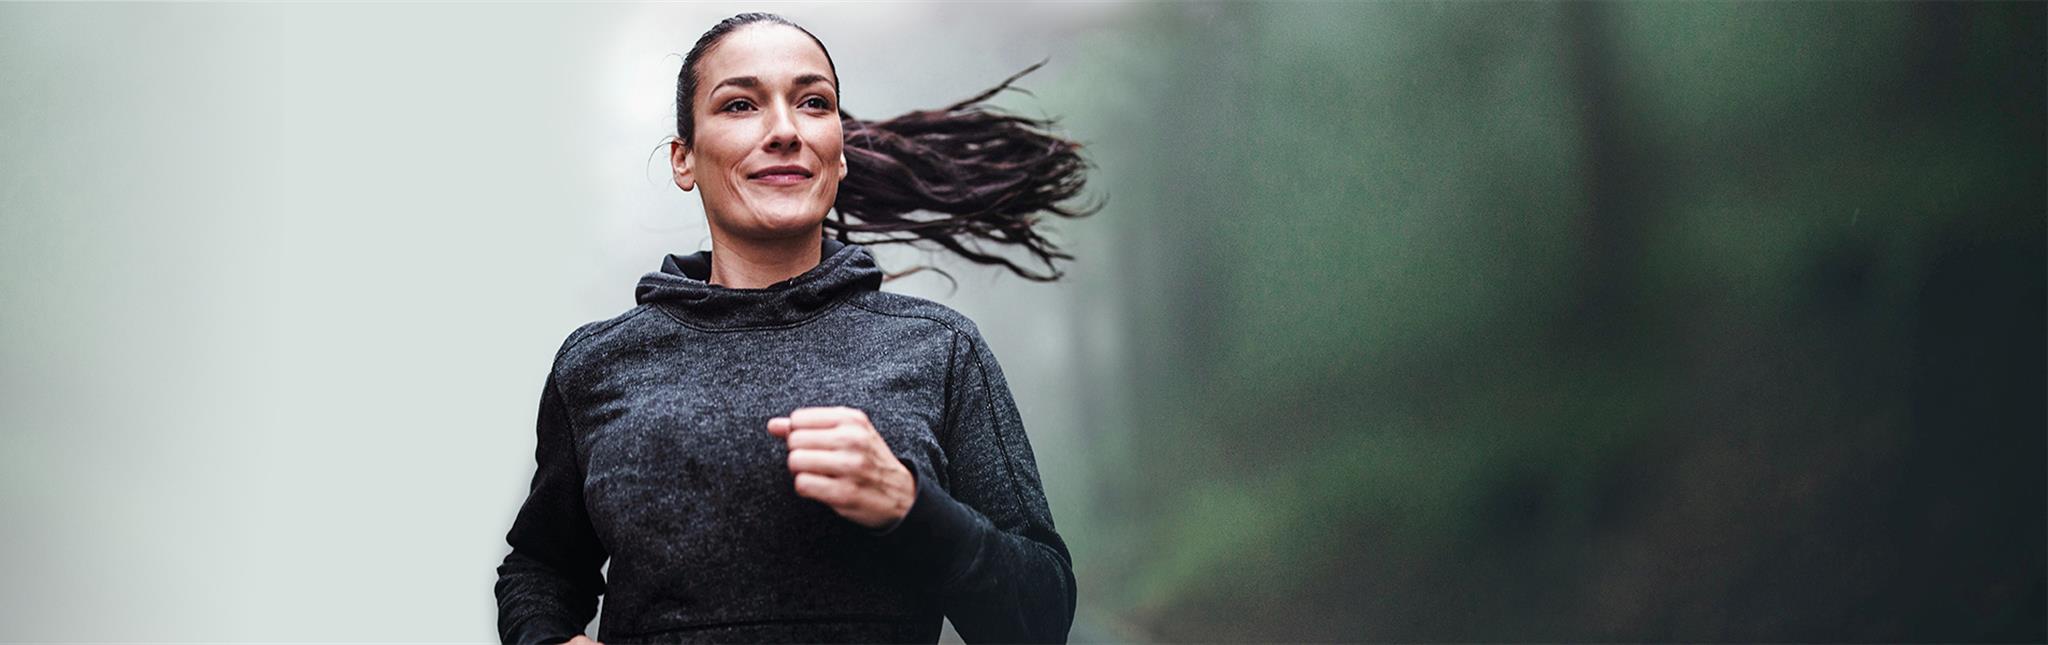 smiling woman enjoying a run